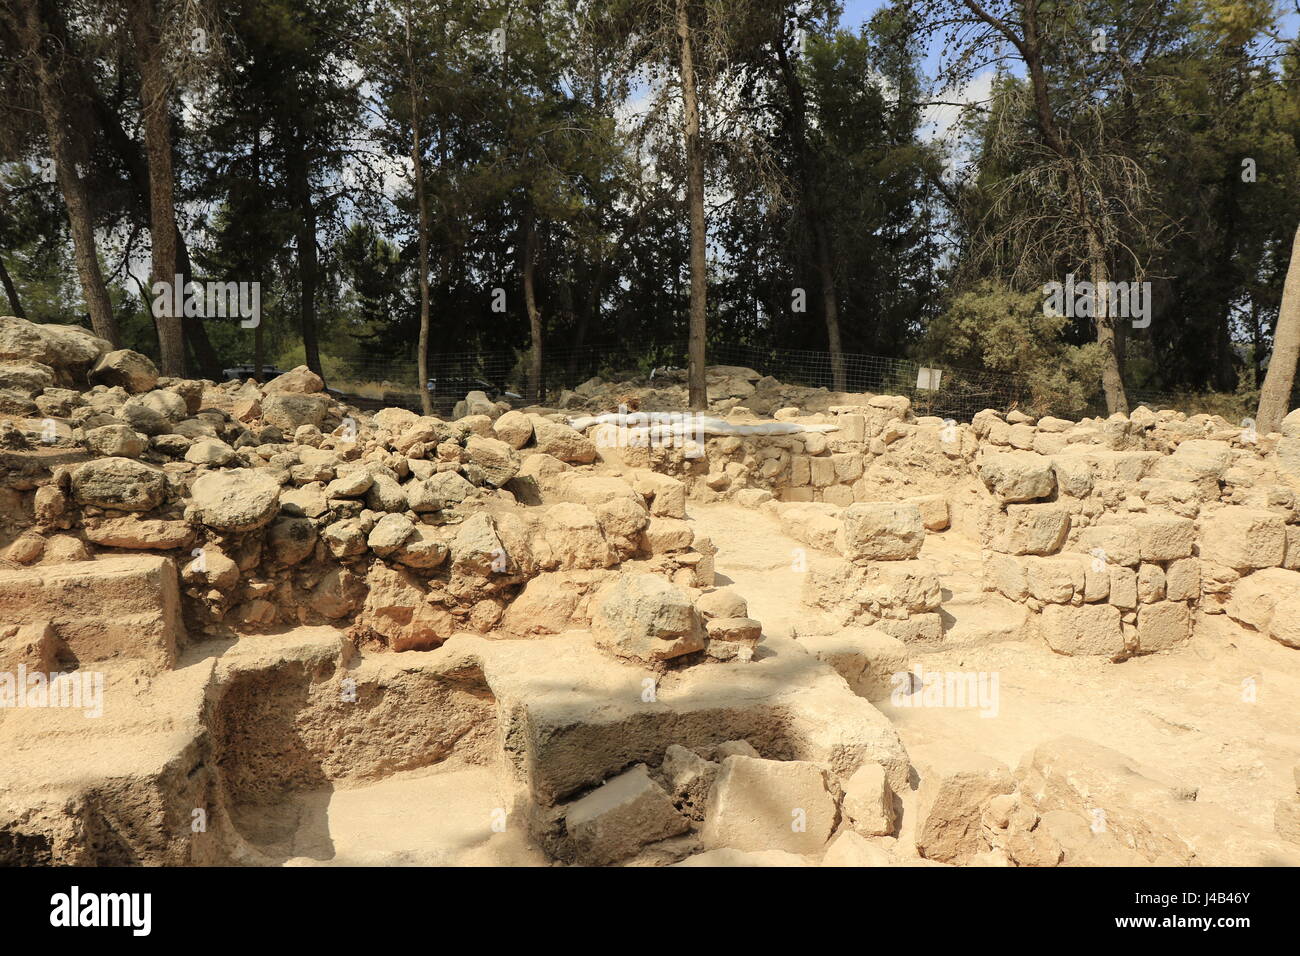 Israel, führte, ein großes Mausoleum in Hurvat Ha-Gardi, eine kurze Entfernung von der Stadt von Modi'in, möglicherweise das Grab der Makkabäer, Matityahu der Hasmonäer und seine fünf Söhne von der antiken Stadt Modi'in, die den Aufstand gegen griechische Herrschaft im 2. Jahrhundert v. Chr. Stockfoto